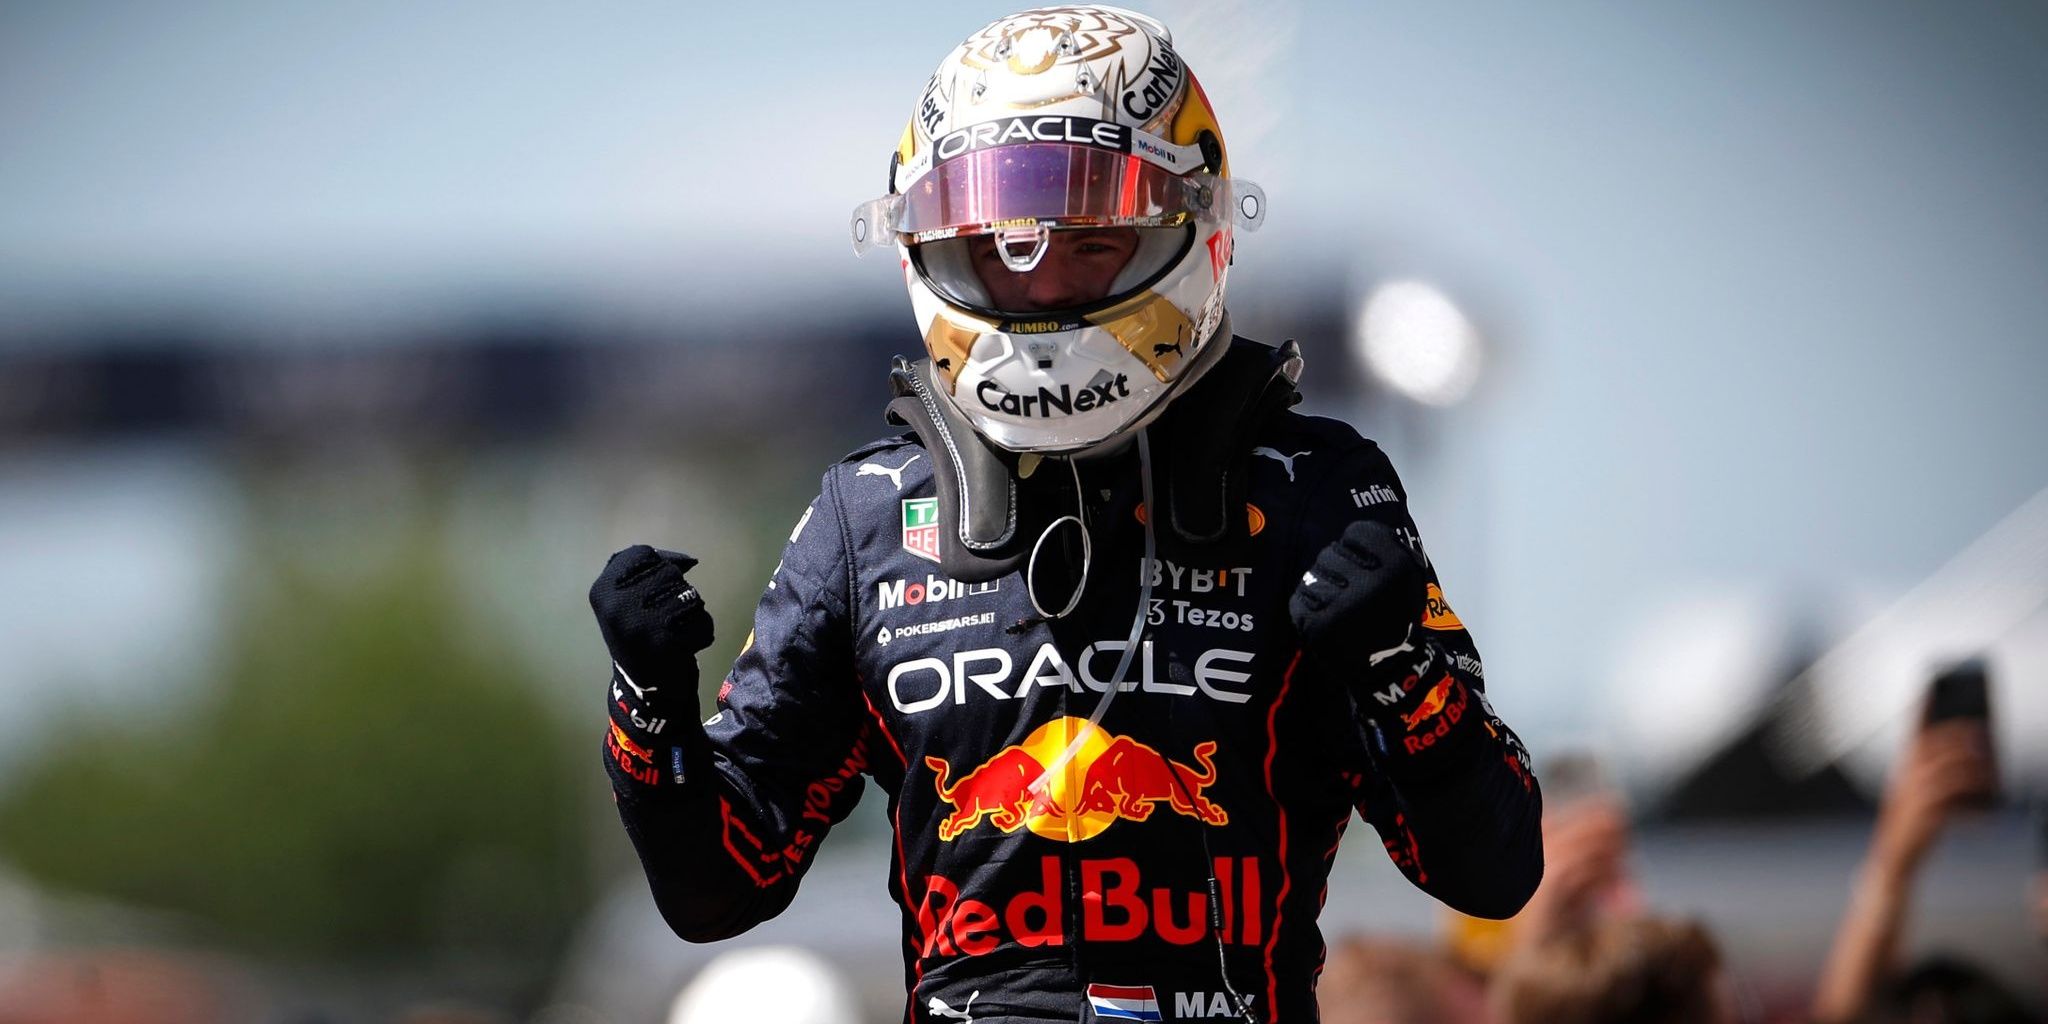 Max Verstappen in F1